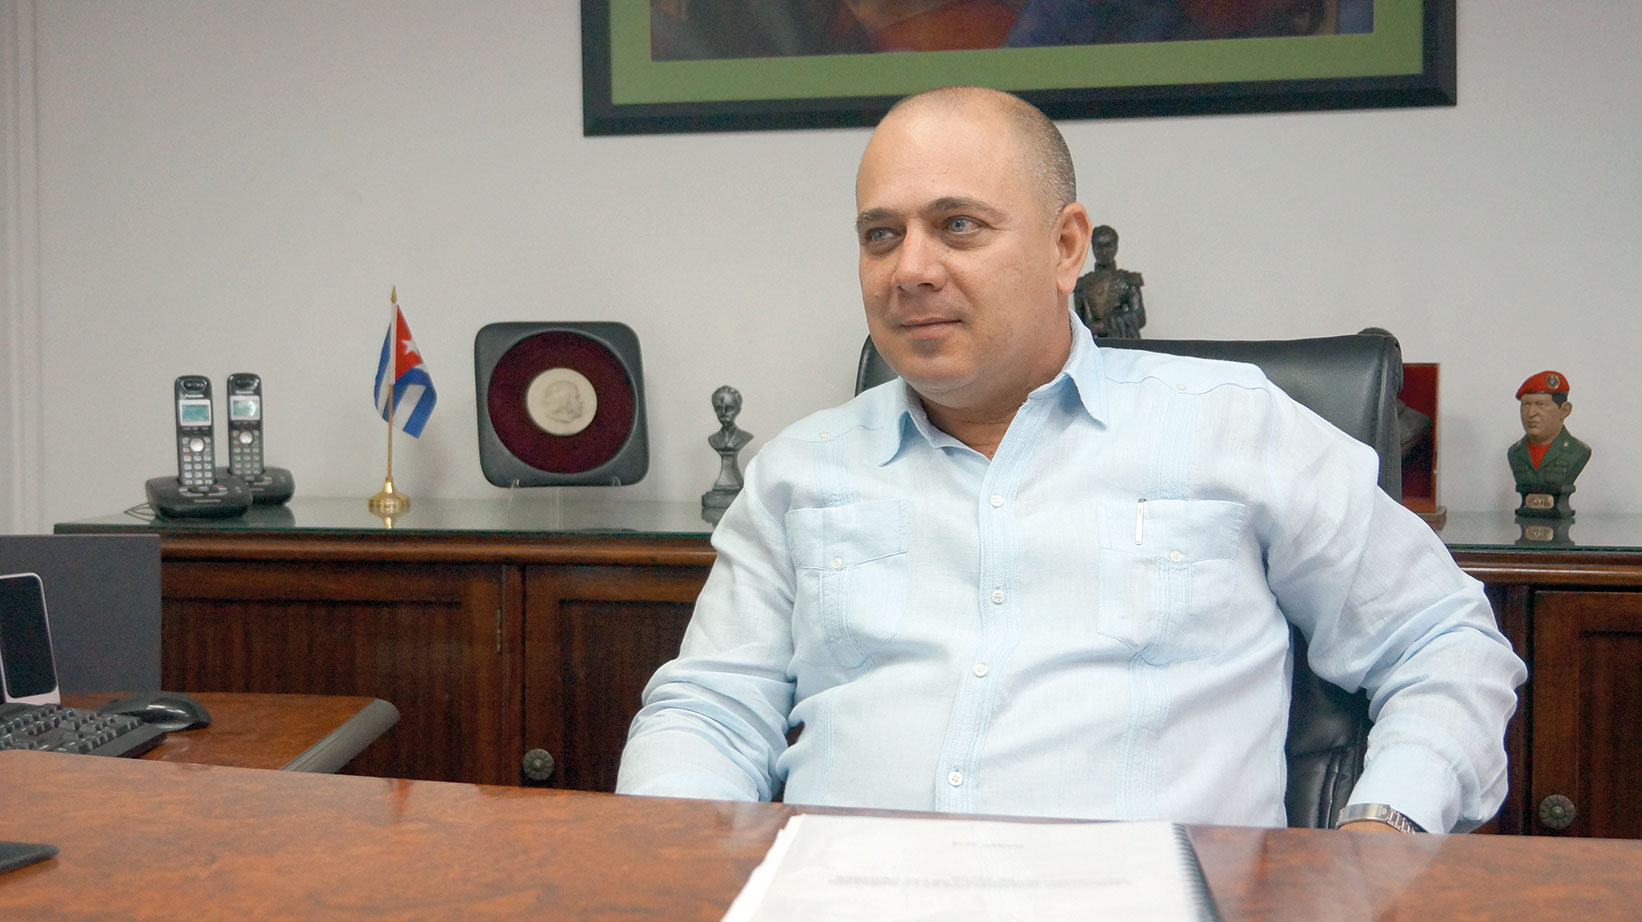 Entrevista al Ministro de Salud Pública de Cuba Dr. Roberto Morales Ojeda, a propósito de la Convención Internacional Cuba-Salud 2015 y la XIII Feria Comercial: Salud para todos